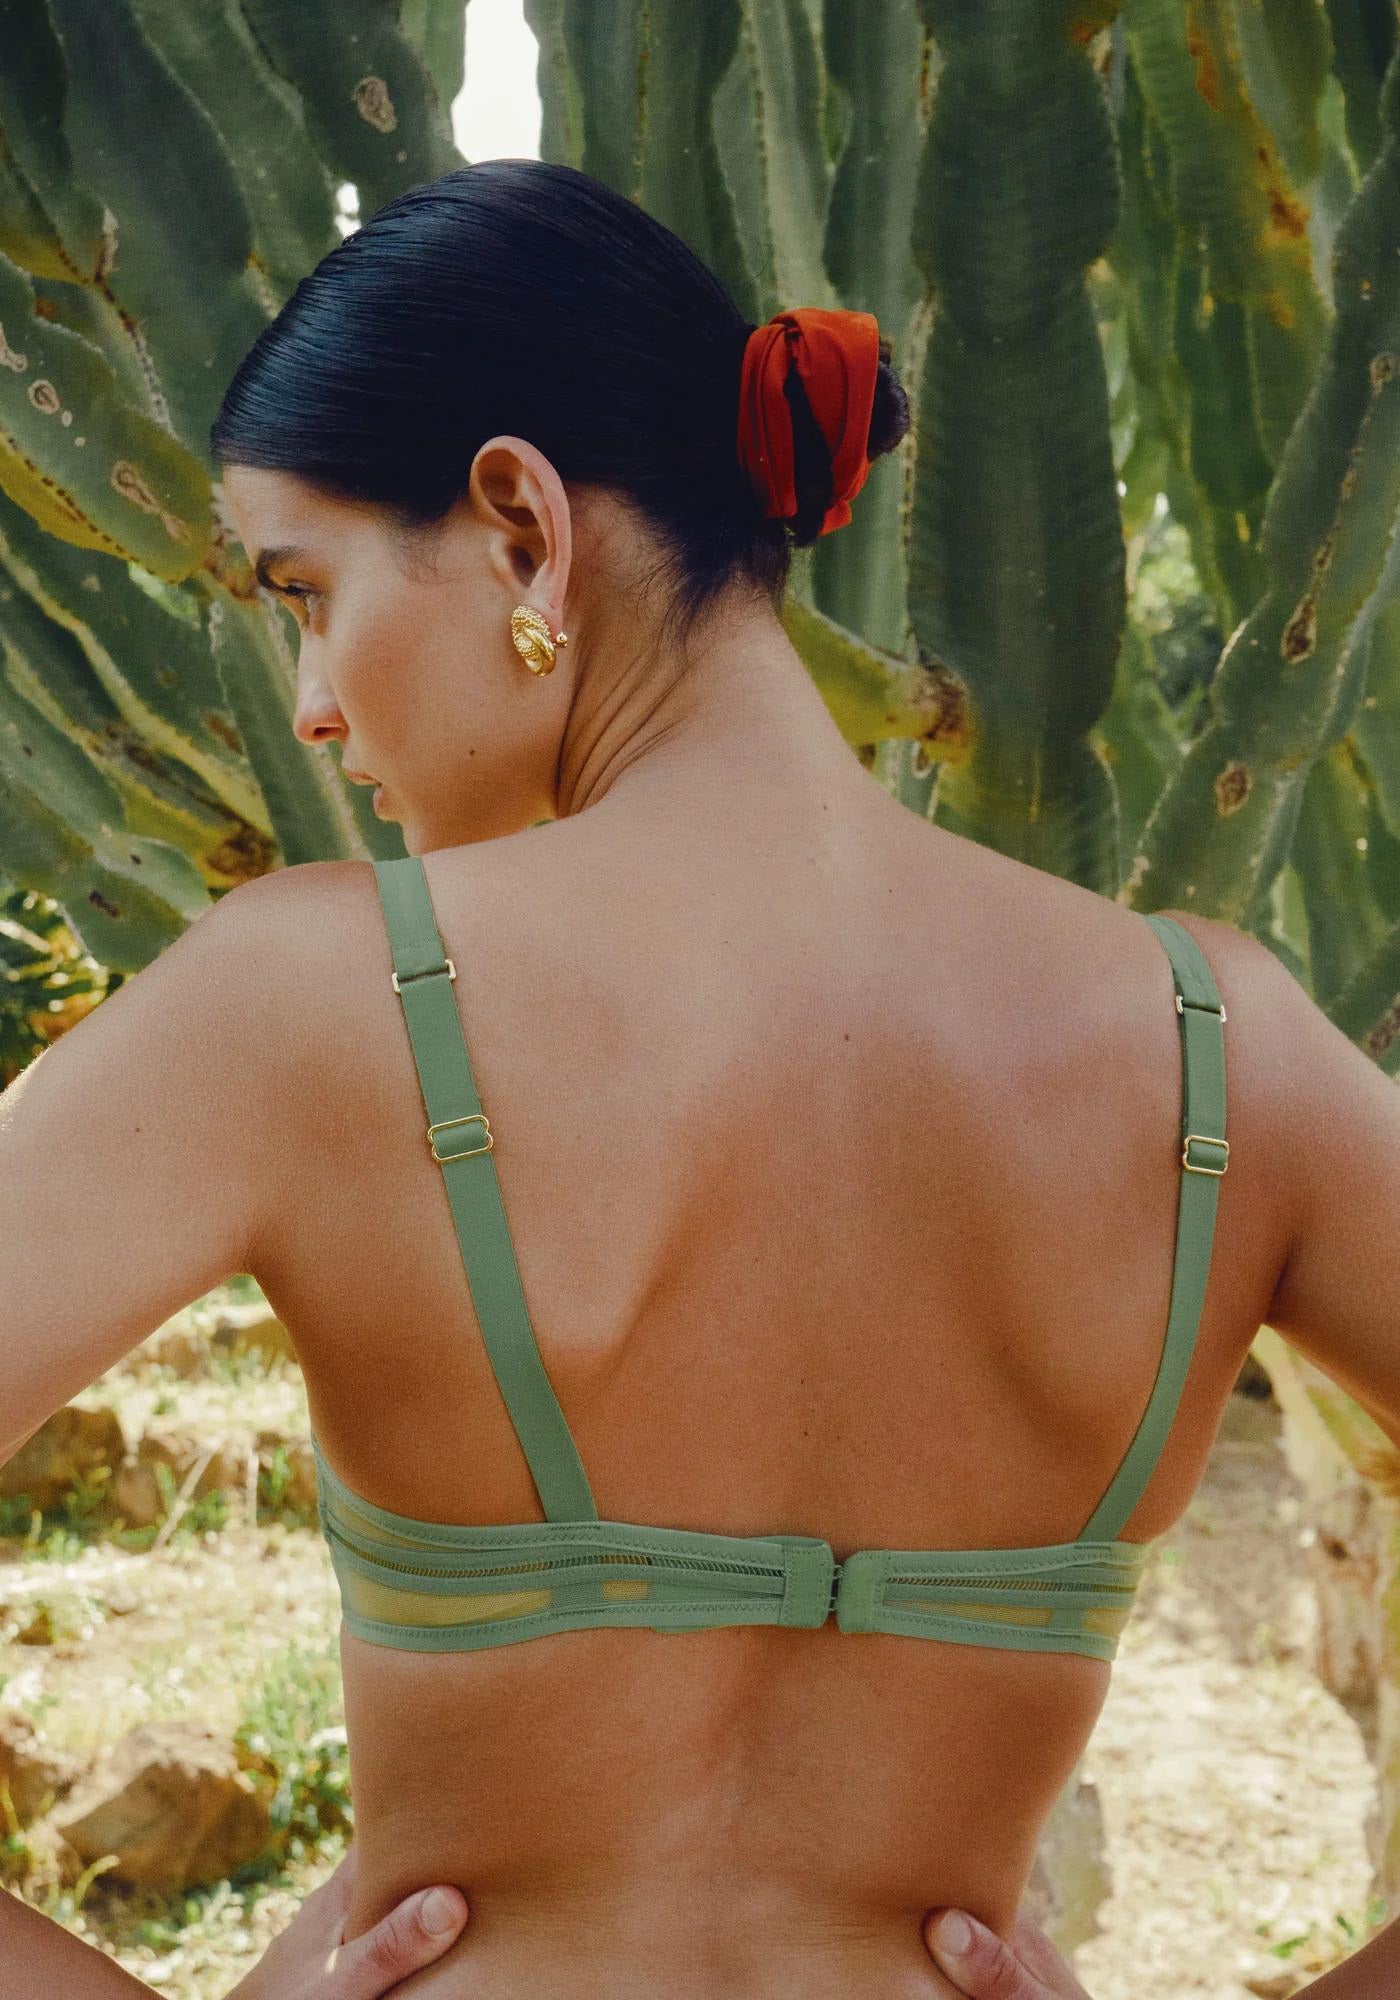 La femme de dos porte le soutien-gorge Gianni vert de chez Icone Lingerie